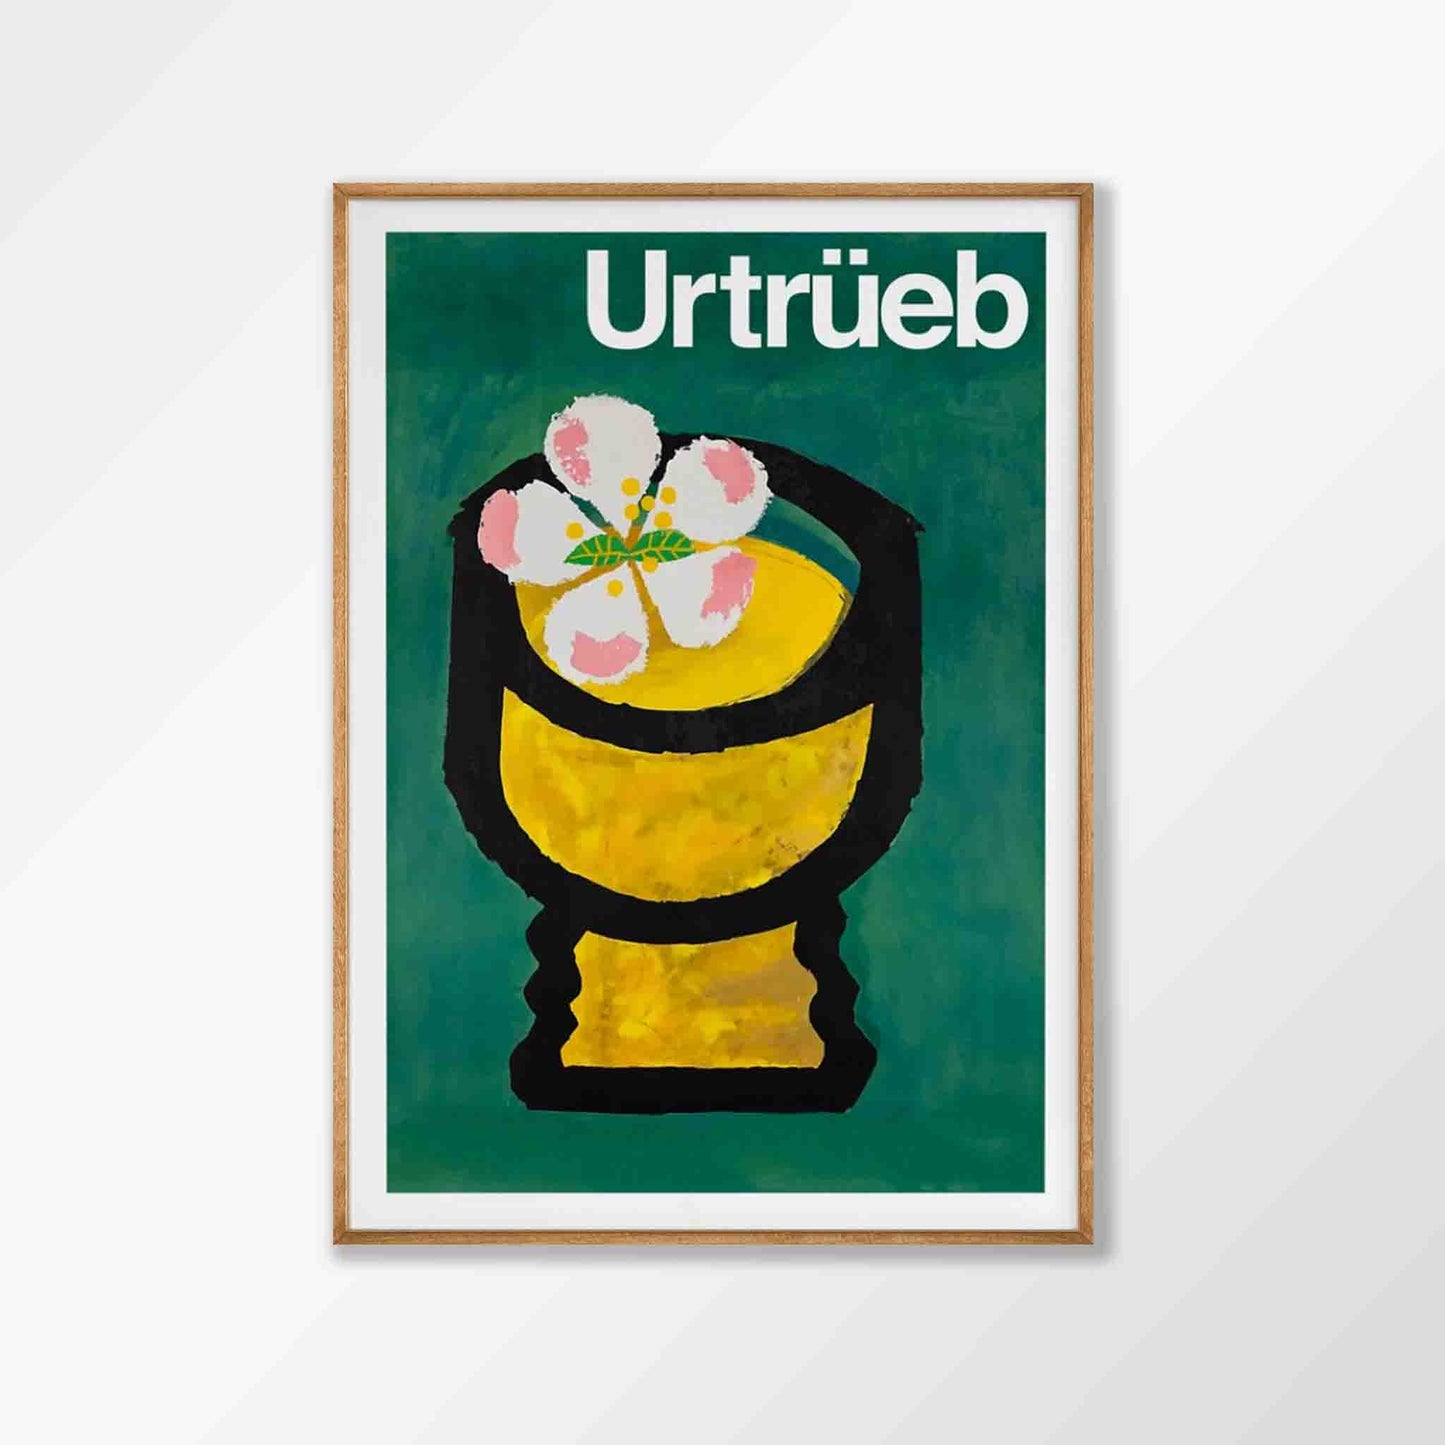 Urtrüeb by Celestino Piatti